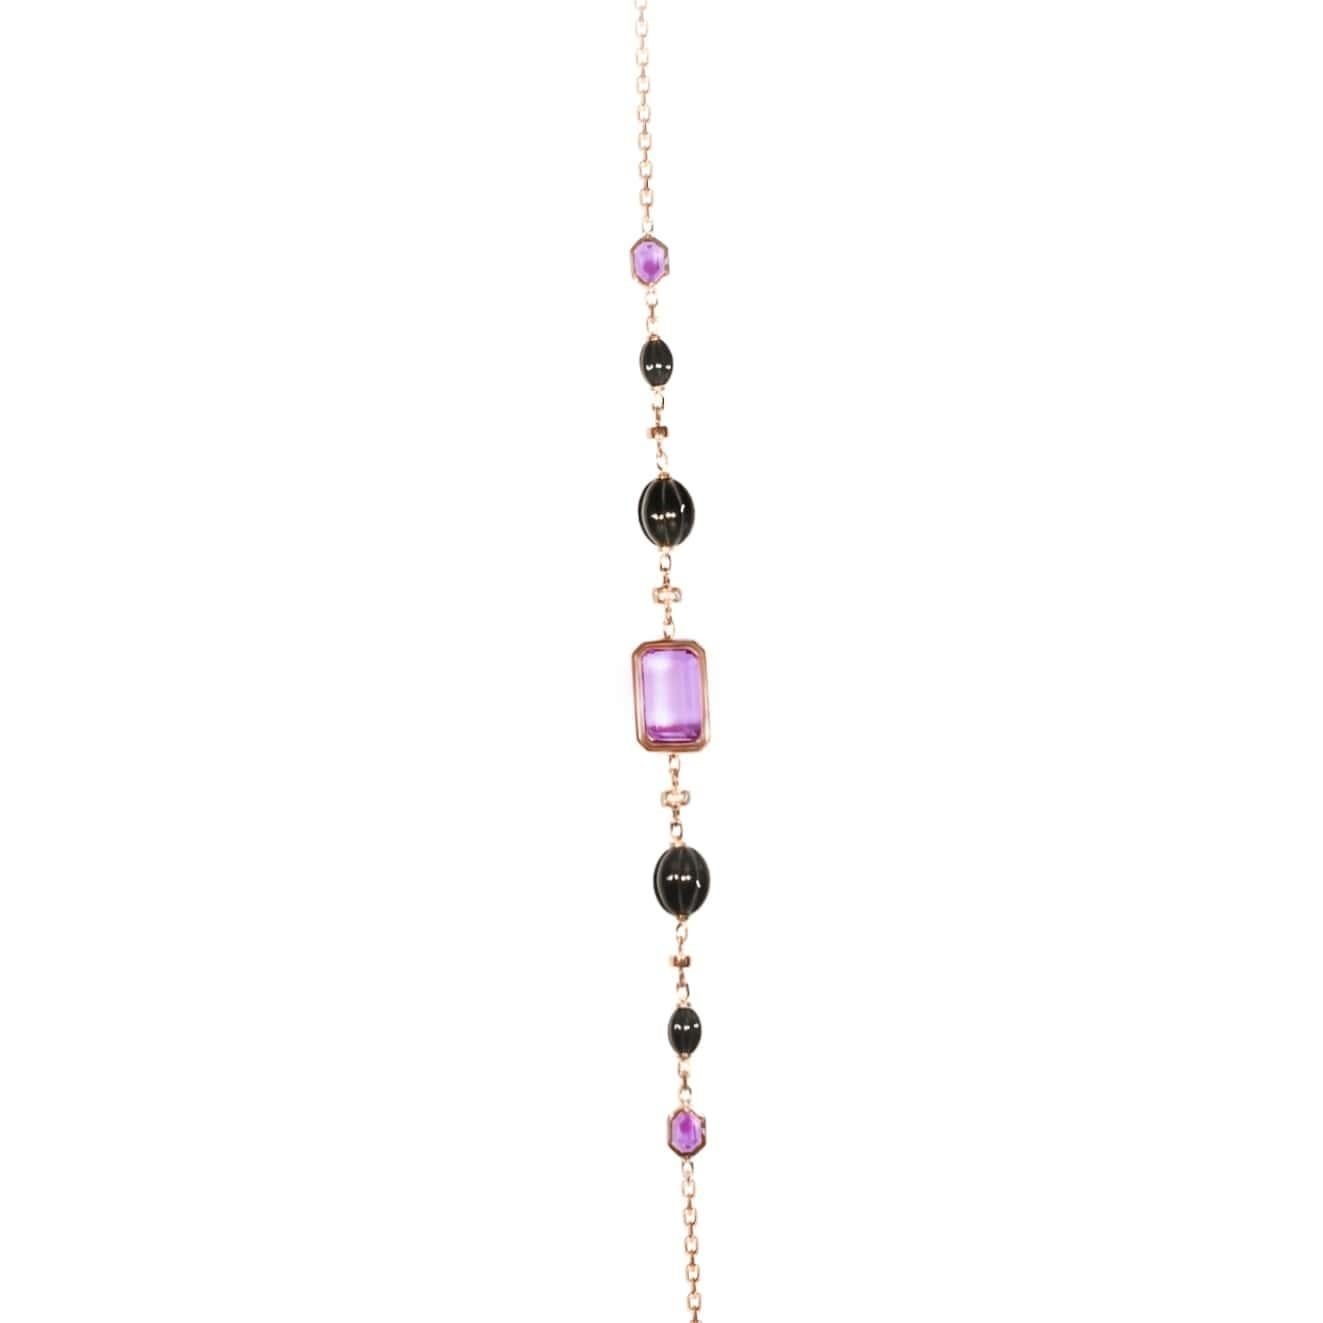 AMETHYST Schwarze Jade Diamanten Rosa in 18 Karat Roségold Lange Halskette 120 cm (47,2 Zoll). HANDGESCHNEIDENE STEINE aus einem speziellen, einzigartigen Design. HANDGEFERTIGT IN FRANKREICH.
Die Designerin Bénédicte hat beschlossen, alle ihre